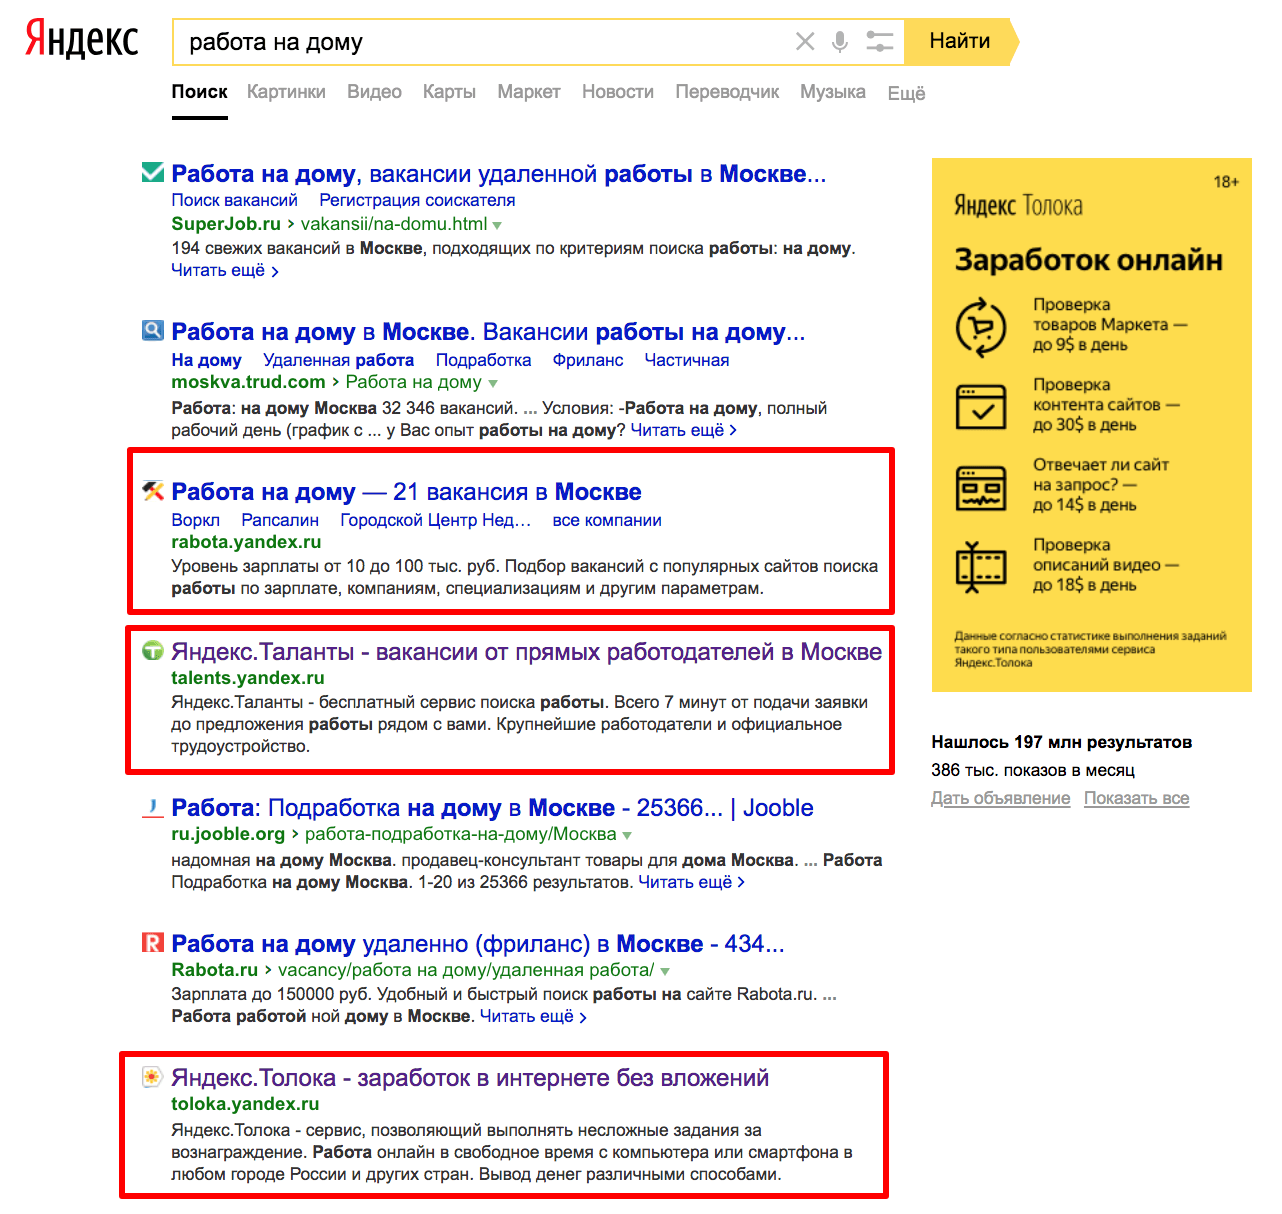 по запросу [работа на дому] в Яндексе в поисковой выдаче можно увидеть еще и 3 разных сервиса Яндекса: Толока, Работа и Таланты